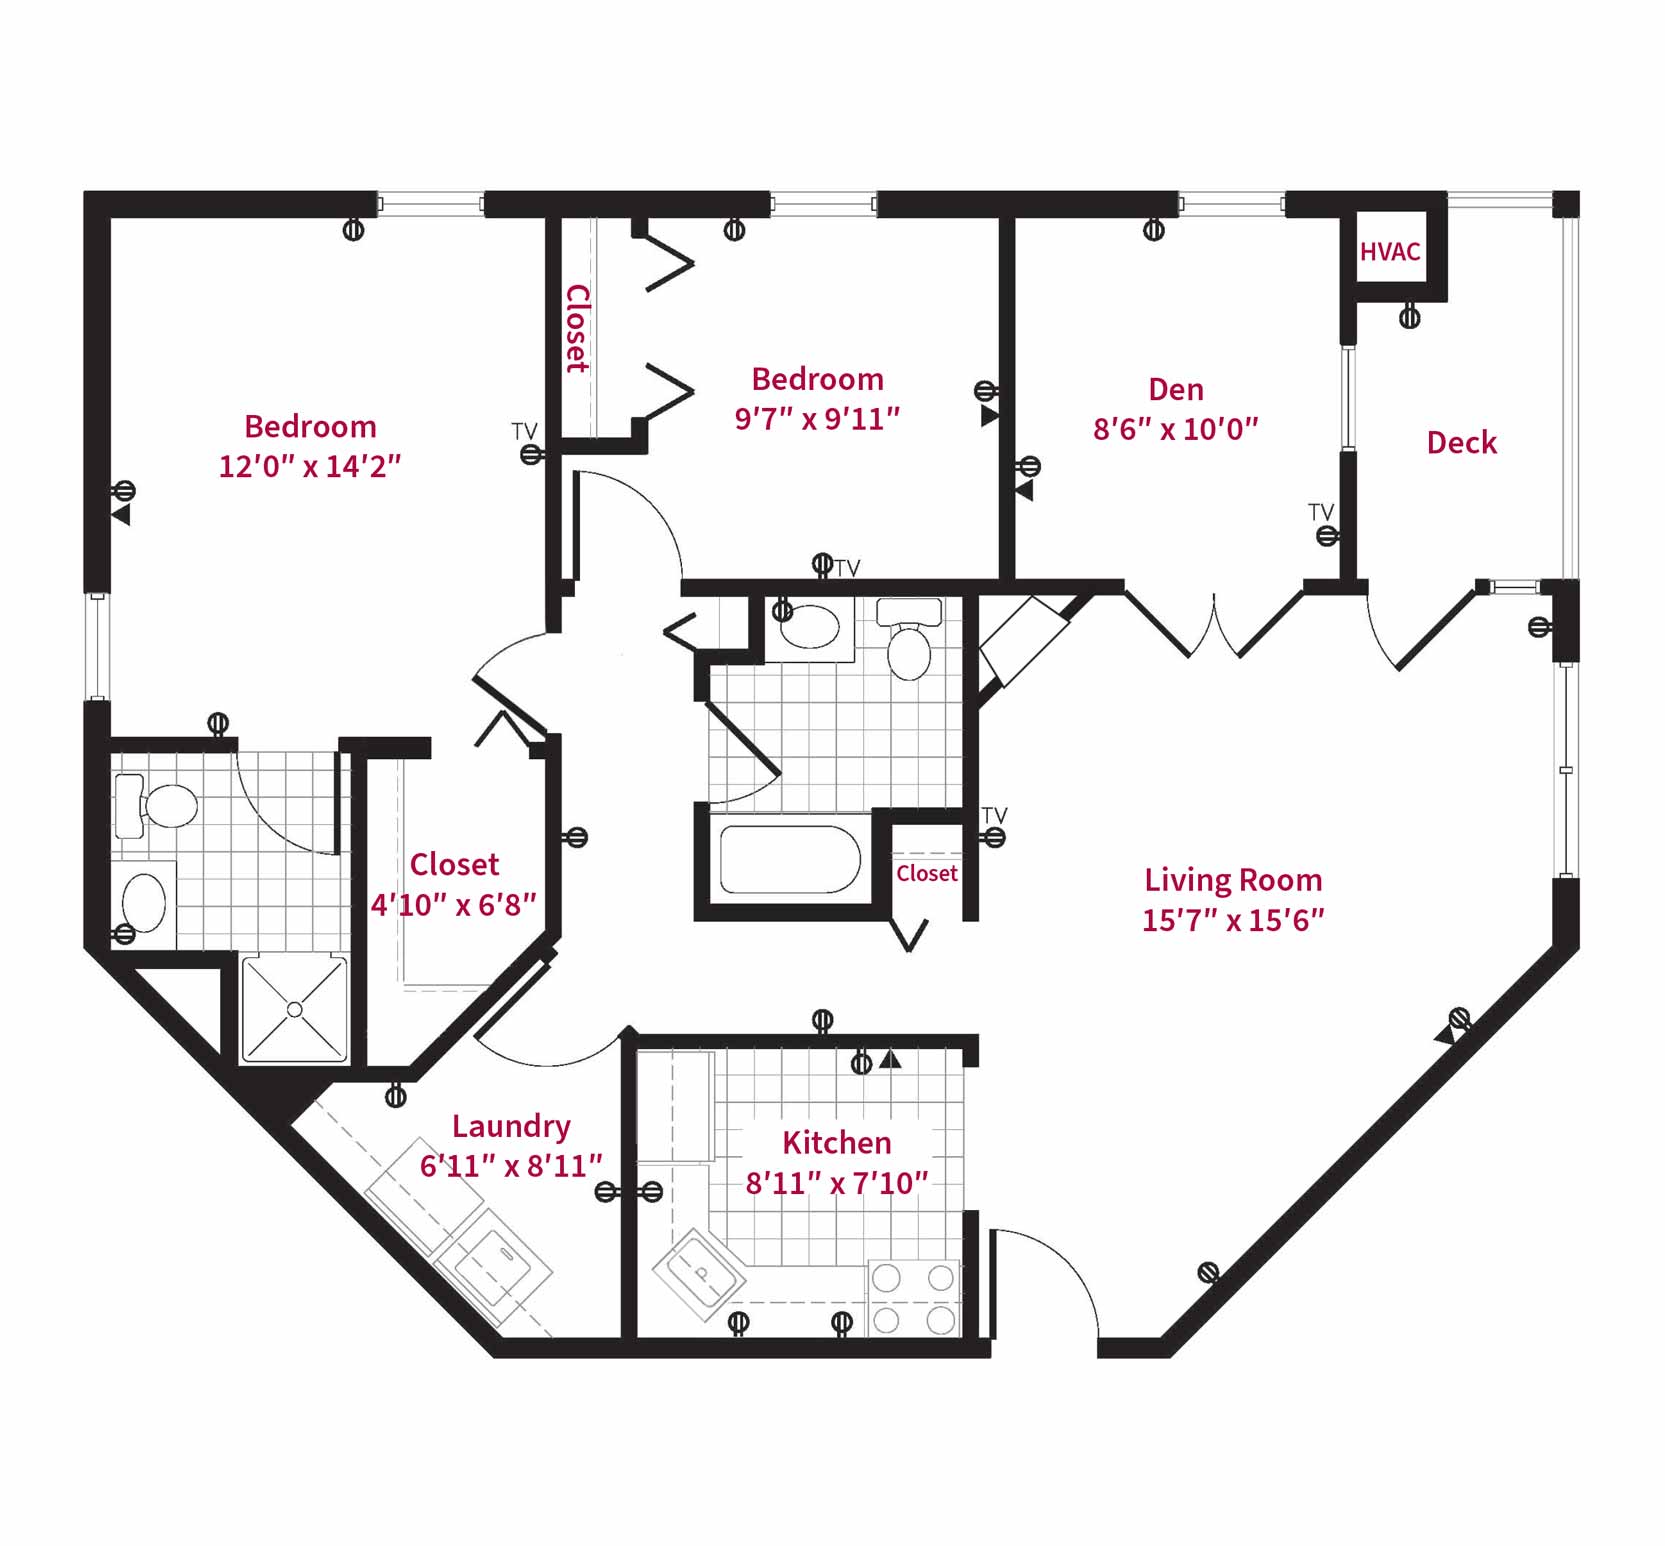 Independent Senior Living Apartments Floor Plans - Delphinium floor plan